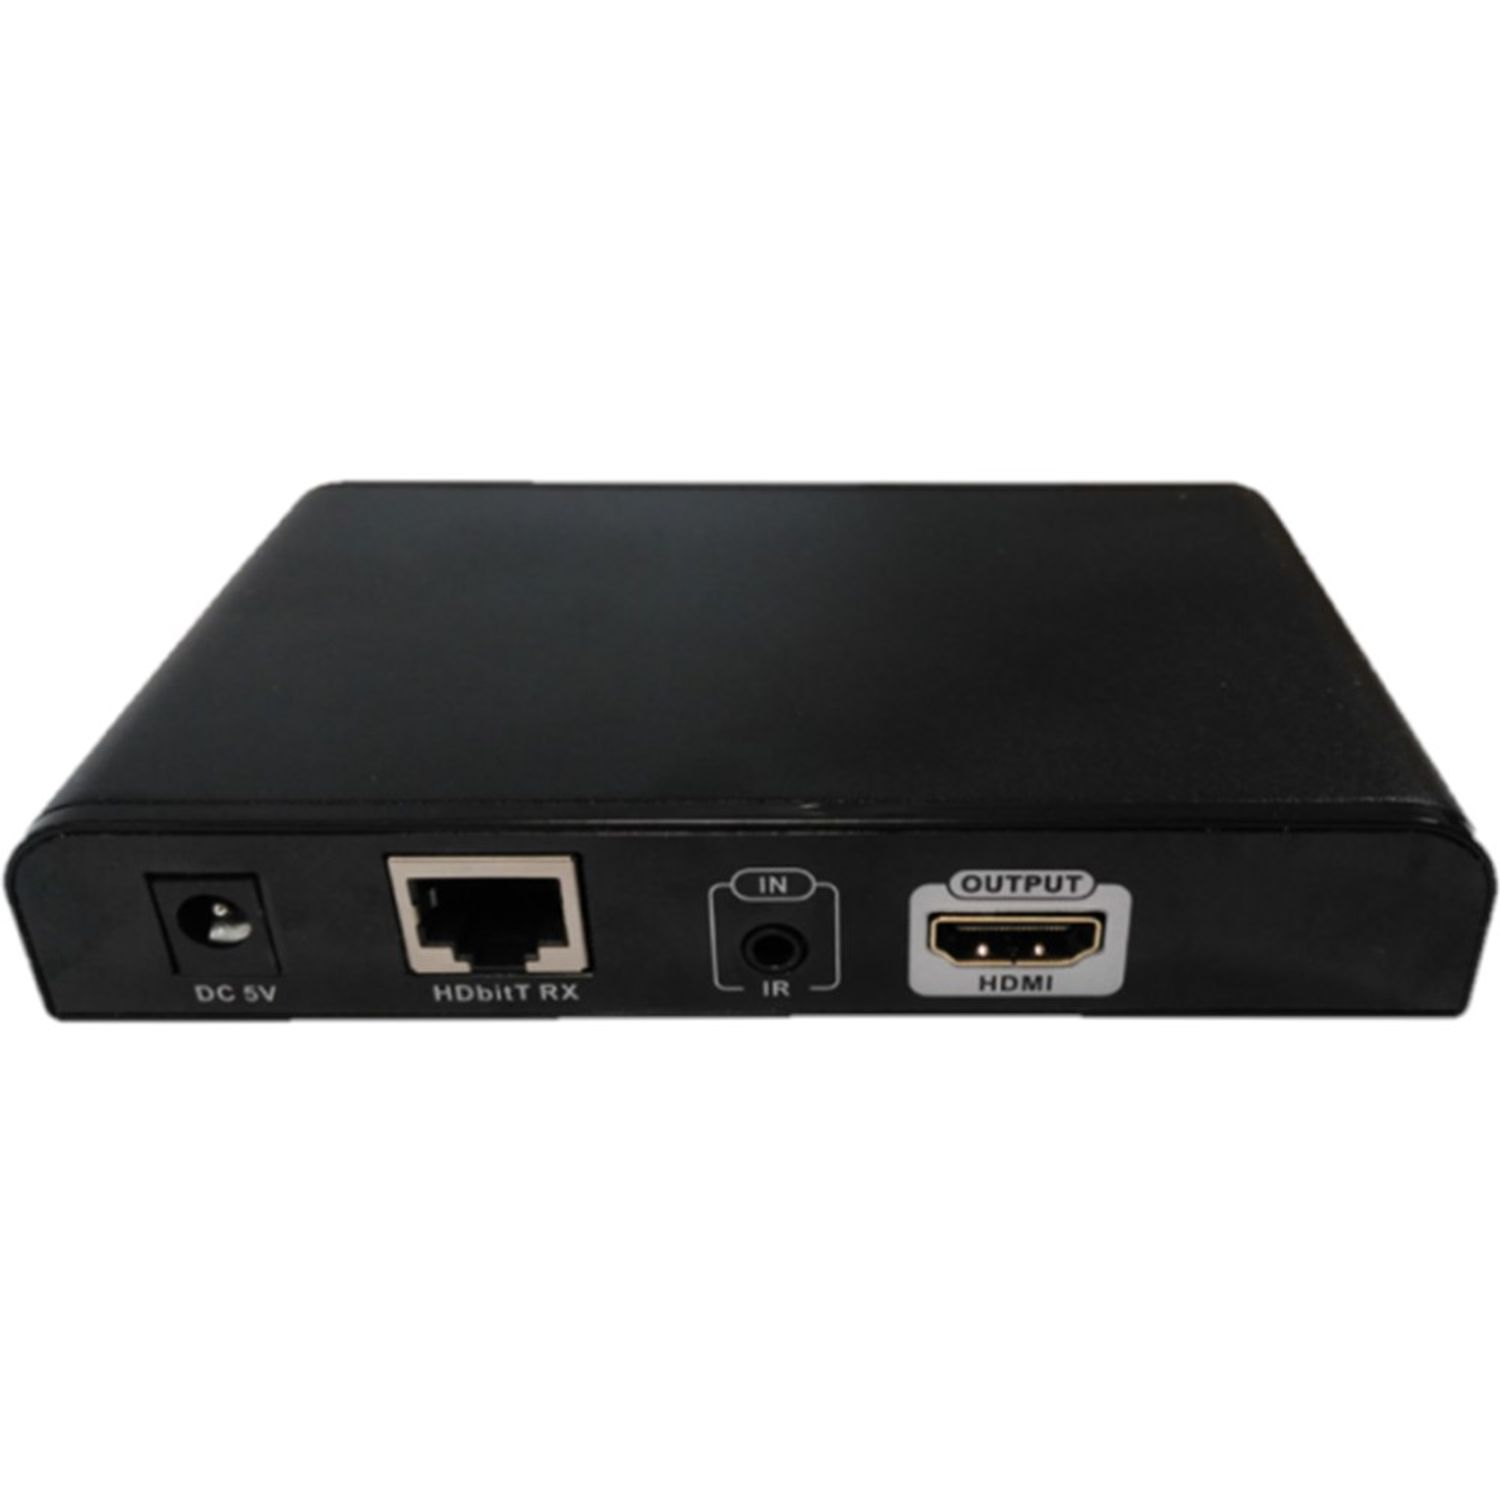 Zubehör Adapter schwarz Kabel FTE MAXIMAL 120 HHENL und (PC),